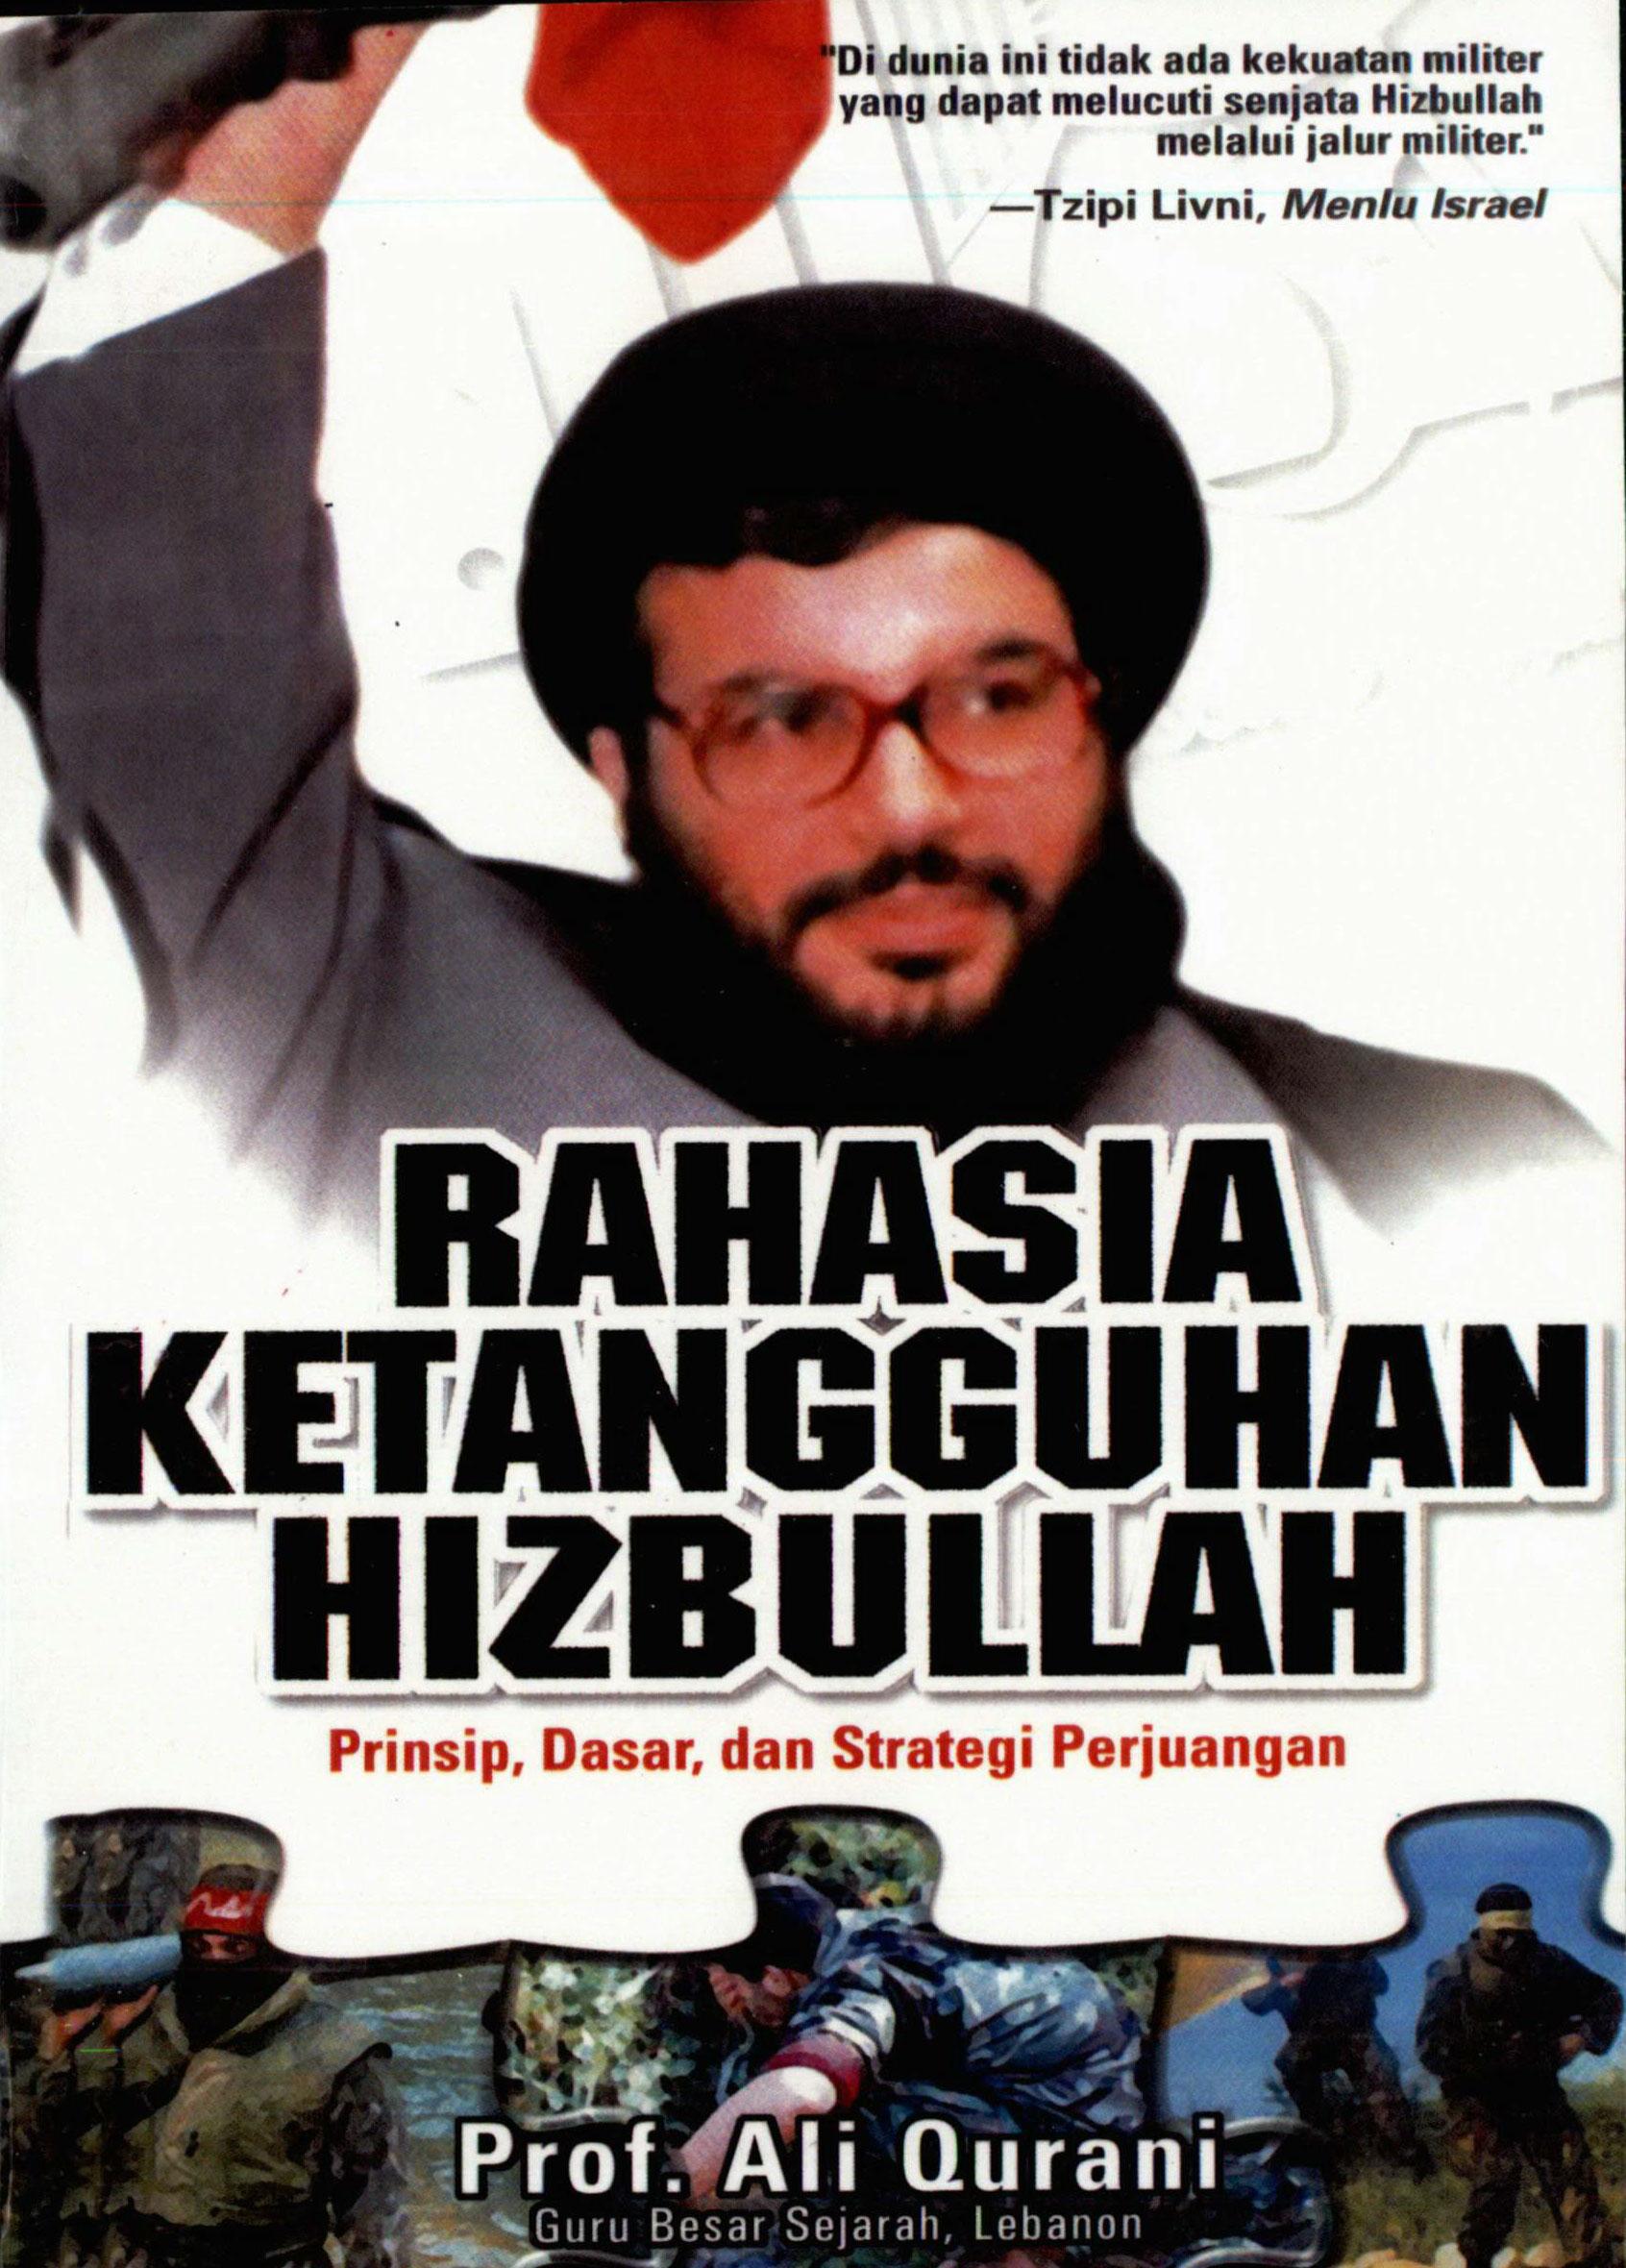 Rahasia Ketangguhan Hizbullah: Prinsip, Dasar, dan Strategi Perjuangan